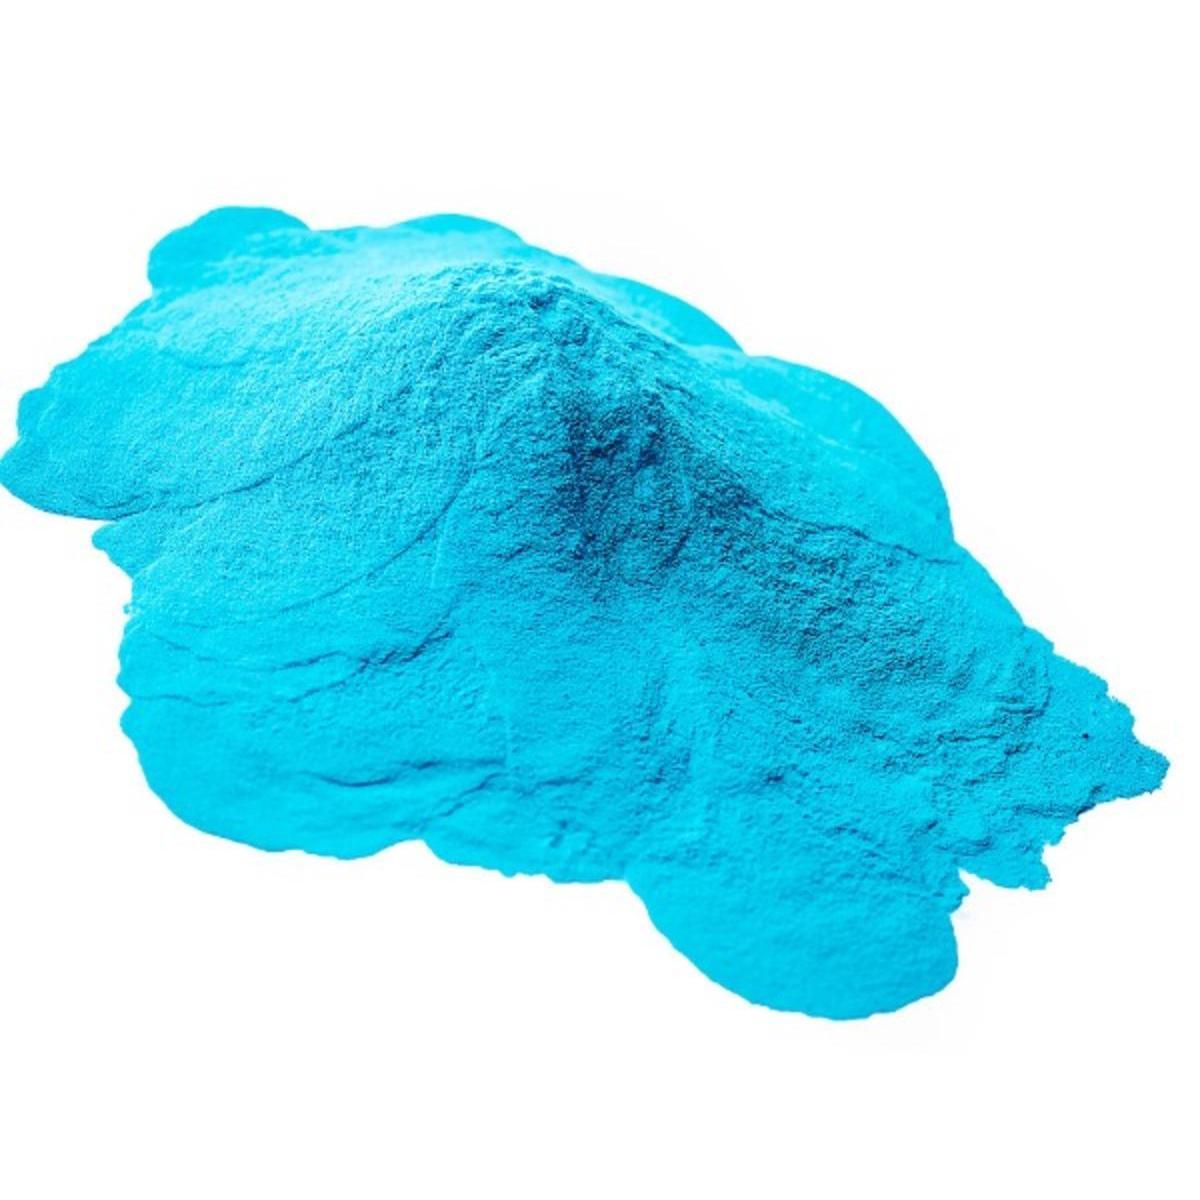 Poudre colorée Holi - 70 g - Bleu